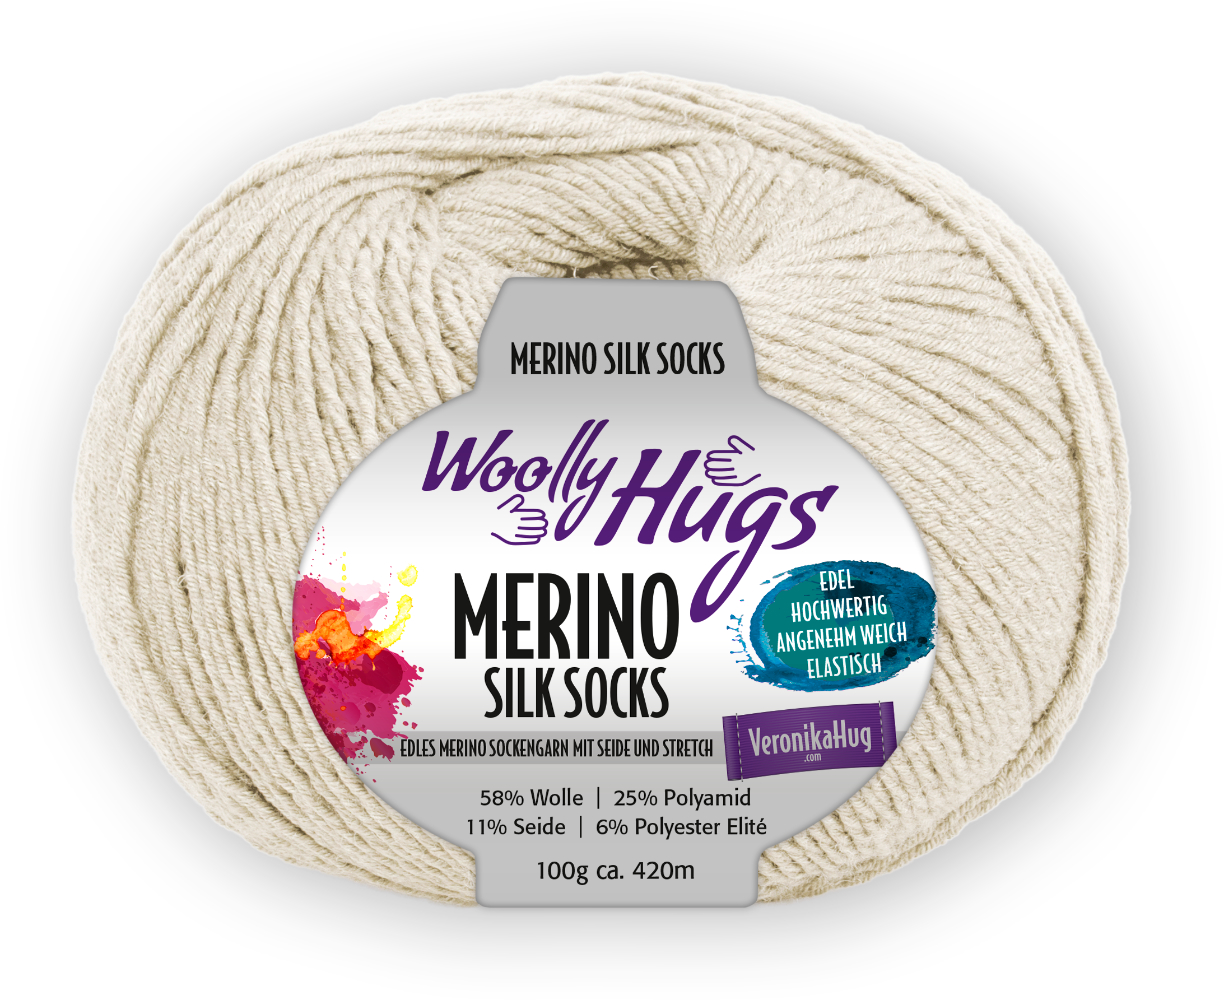 Merino Silk Socks Stretch, 4-fach von Woolly Hugs 0205 - hellbeige